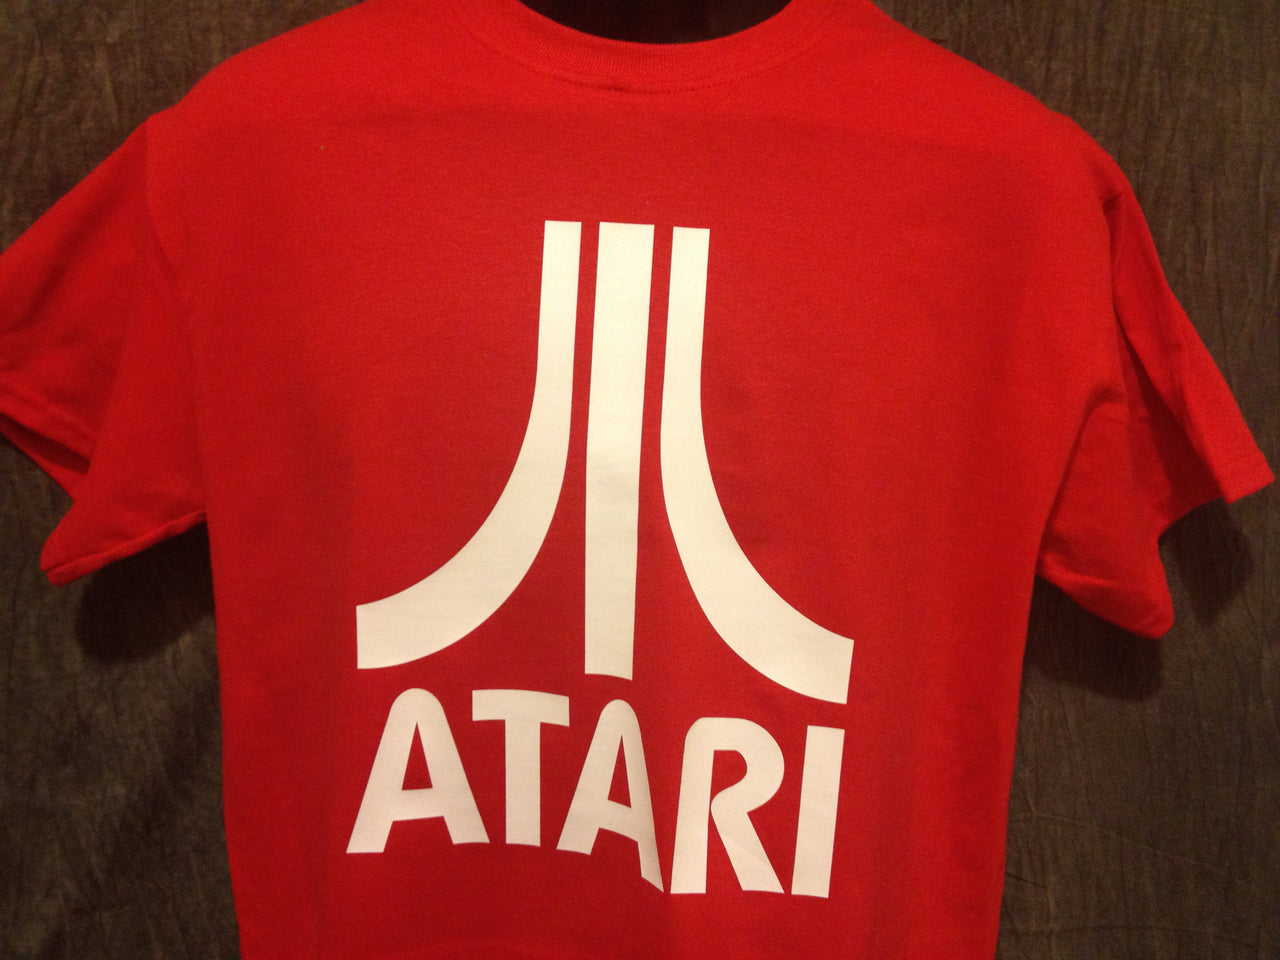 Atari Logo Tshirt: Red With White Print - TshirtNow.net - 4